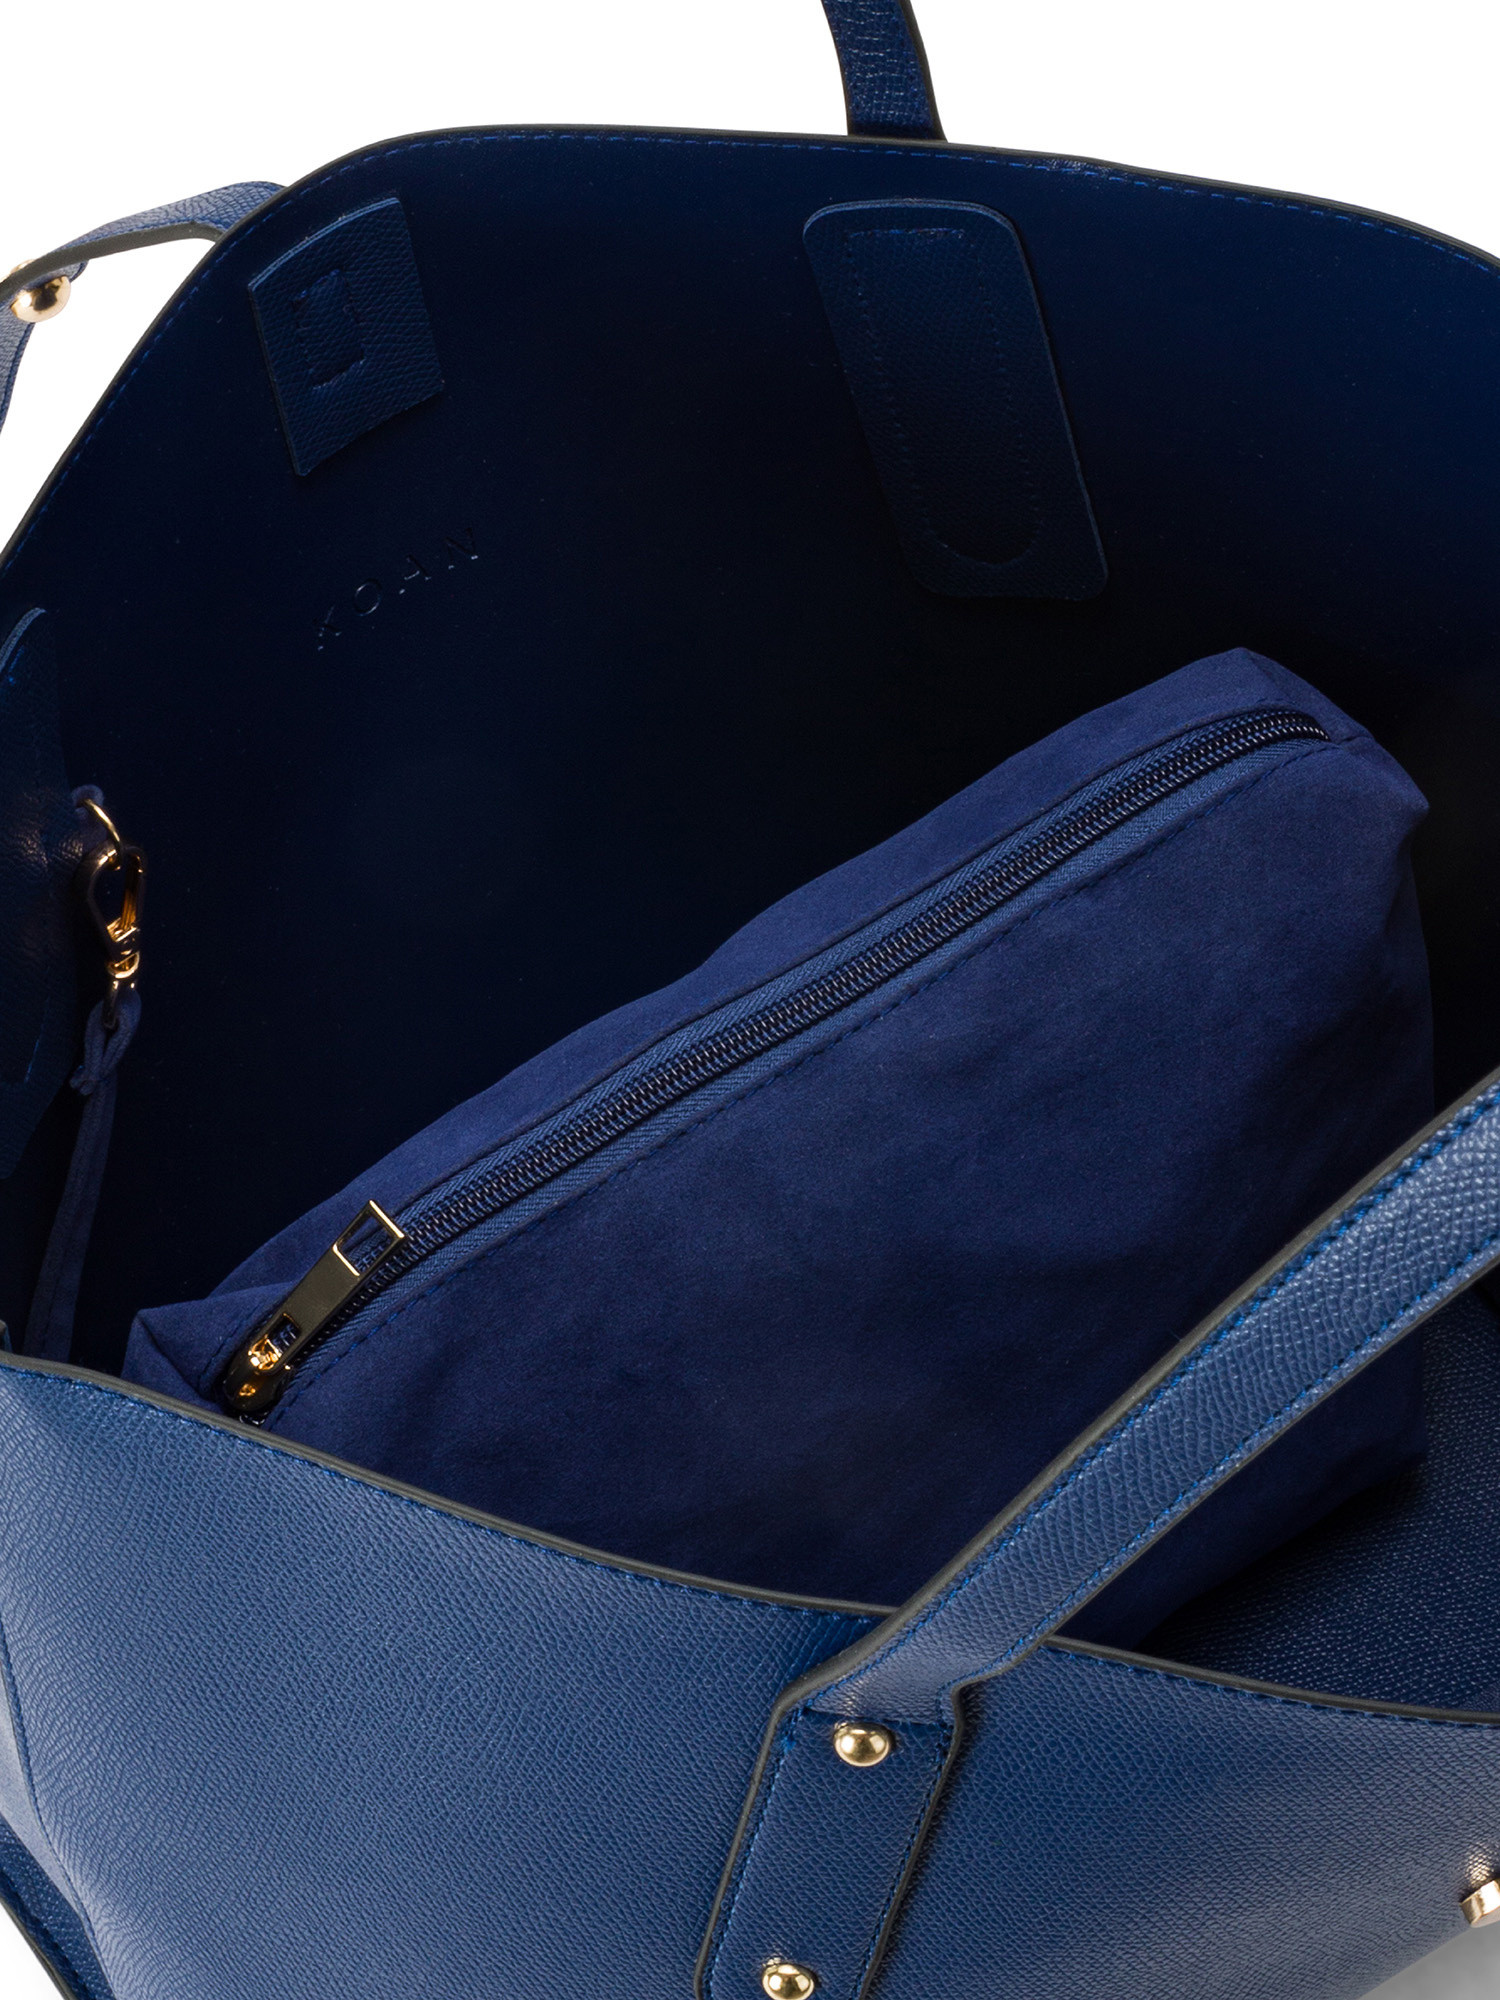 Koan - Shopping bag, Blu royal, large image number 2